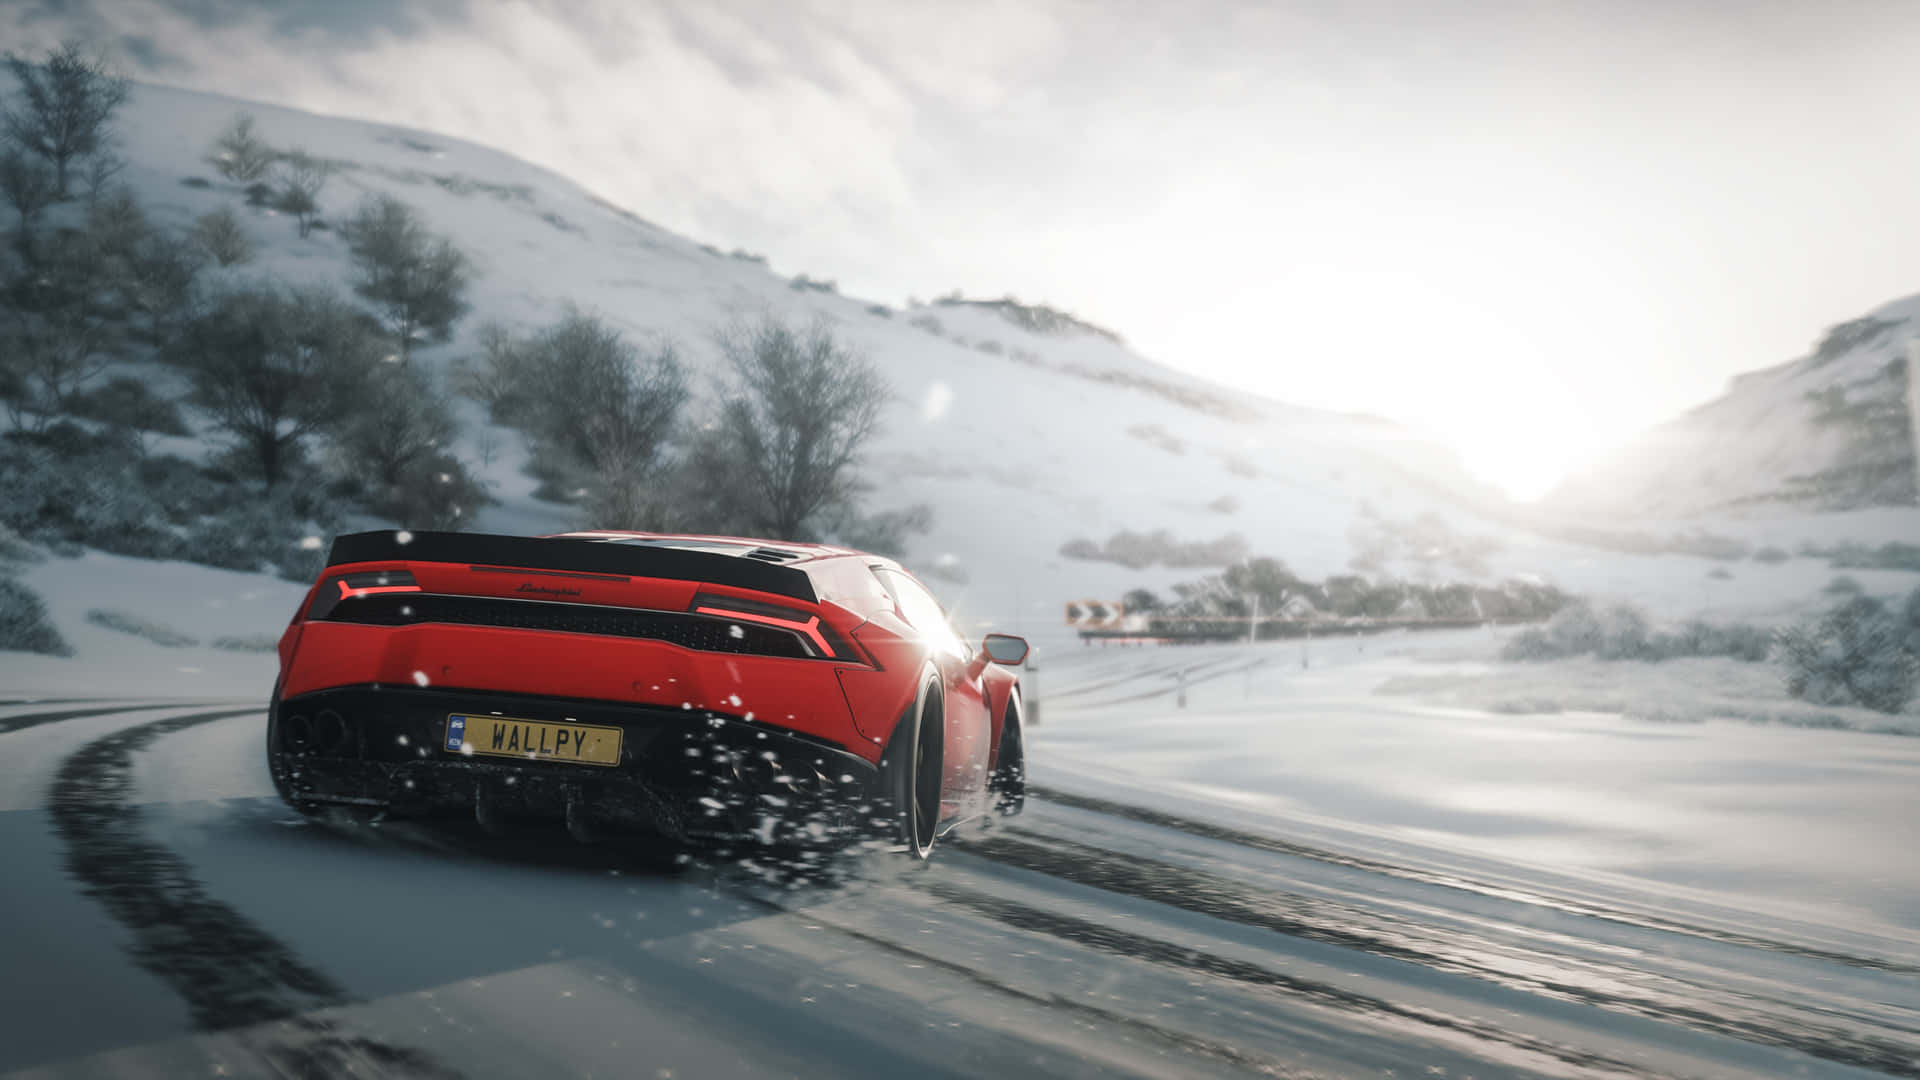 Lamborghinirojo En La Nieve Forza Horizon 4 Hd Fondo de pantalla